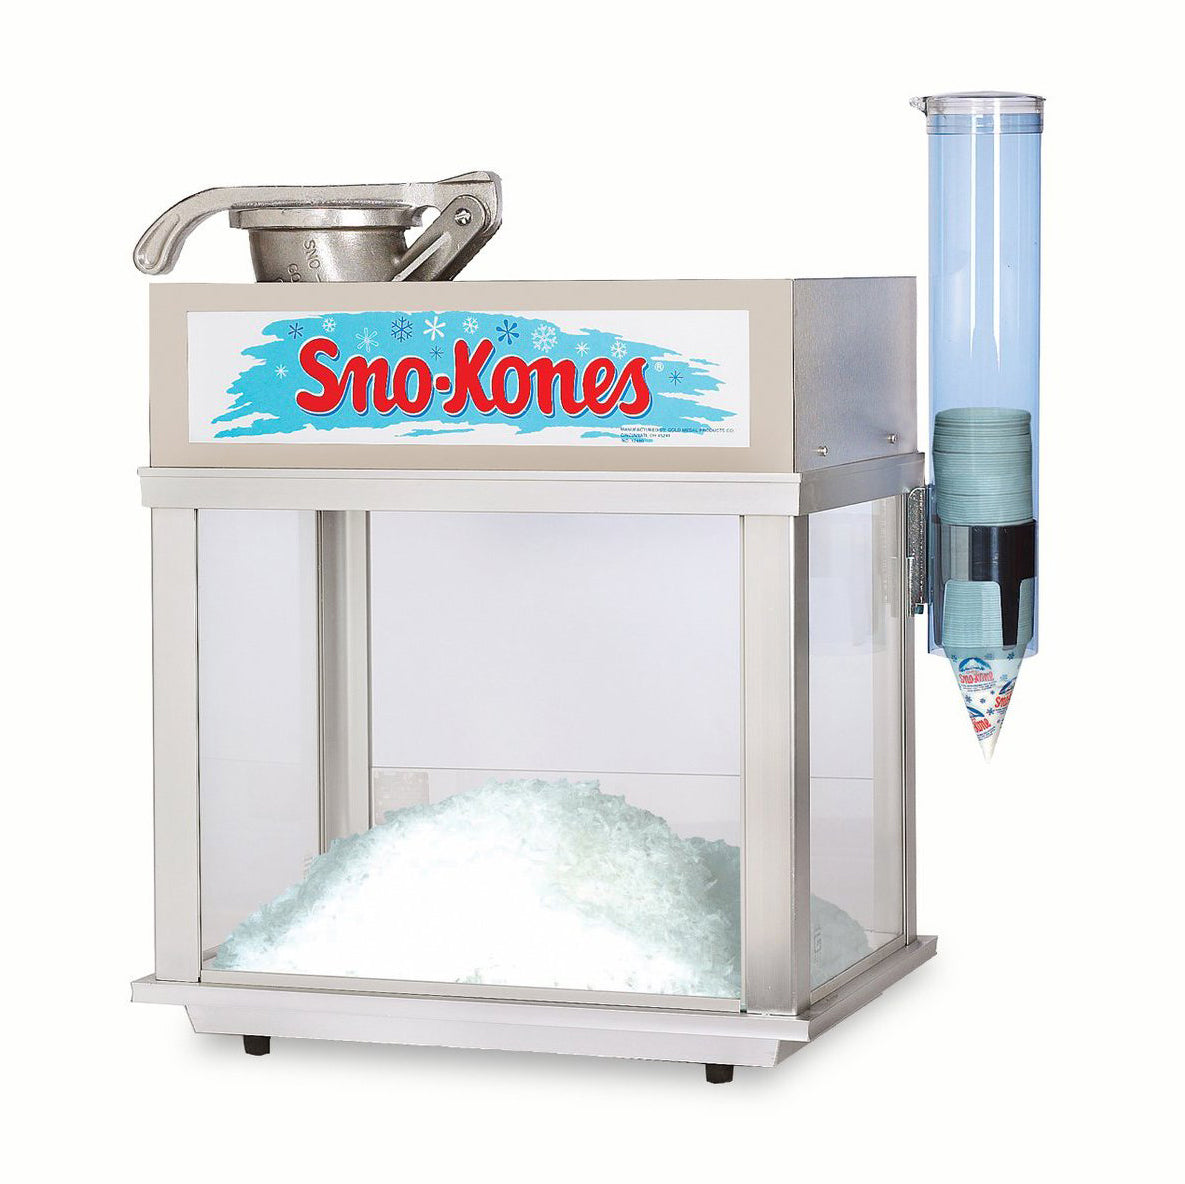 Deluxe Sno-Konette Snow Cone Maker